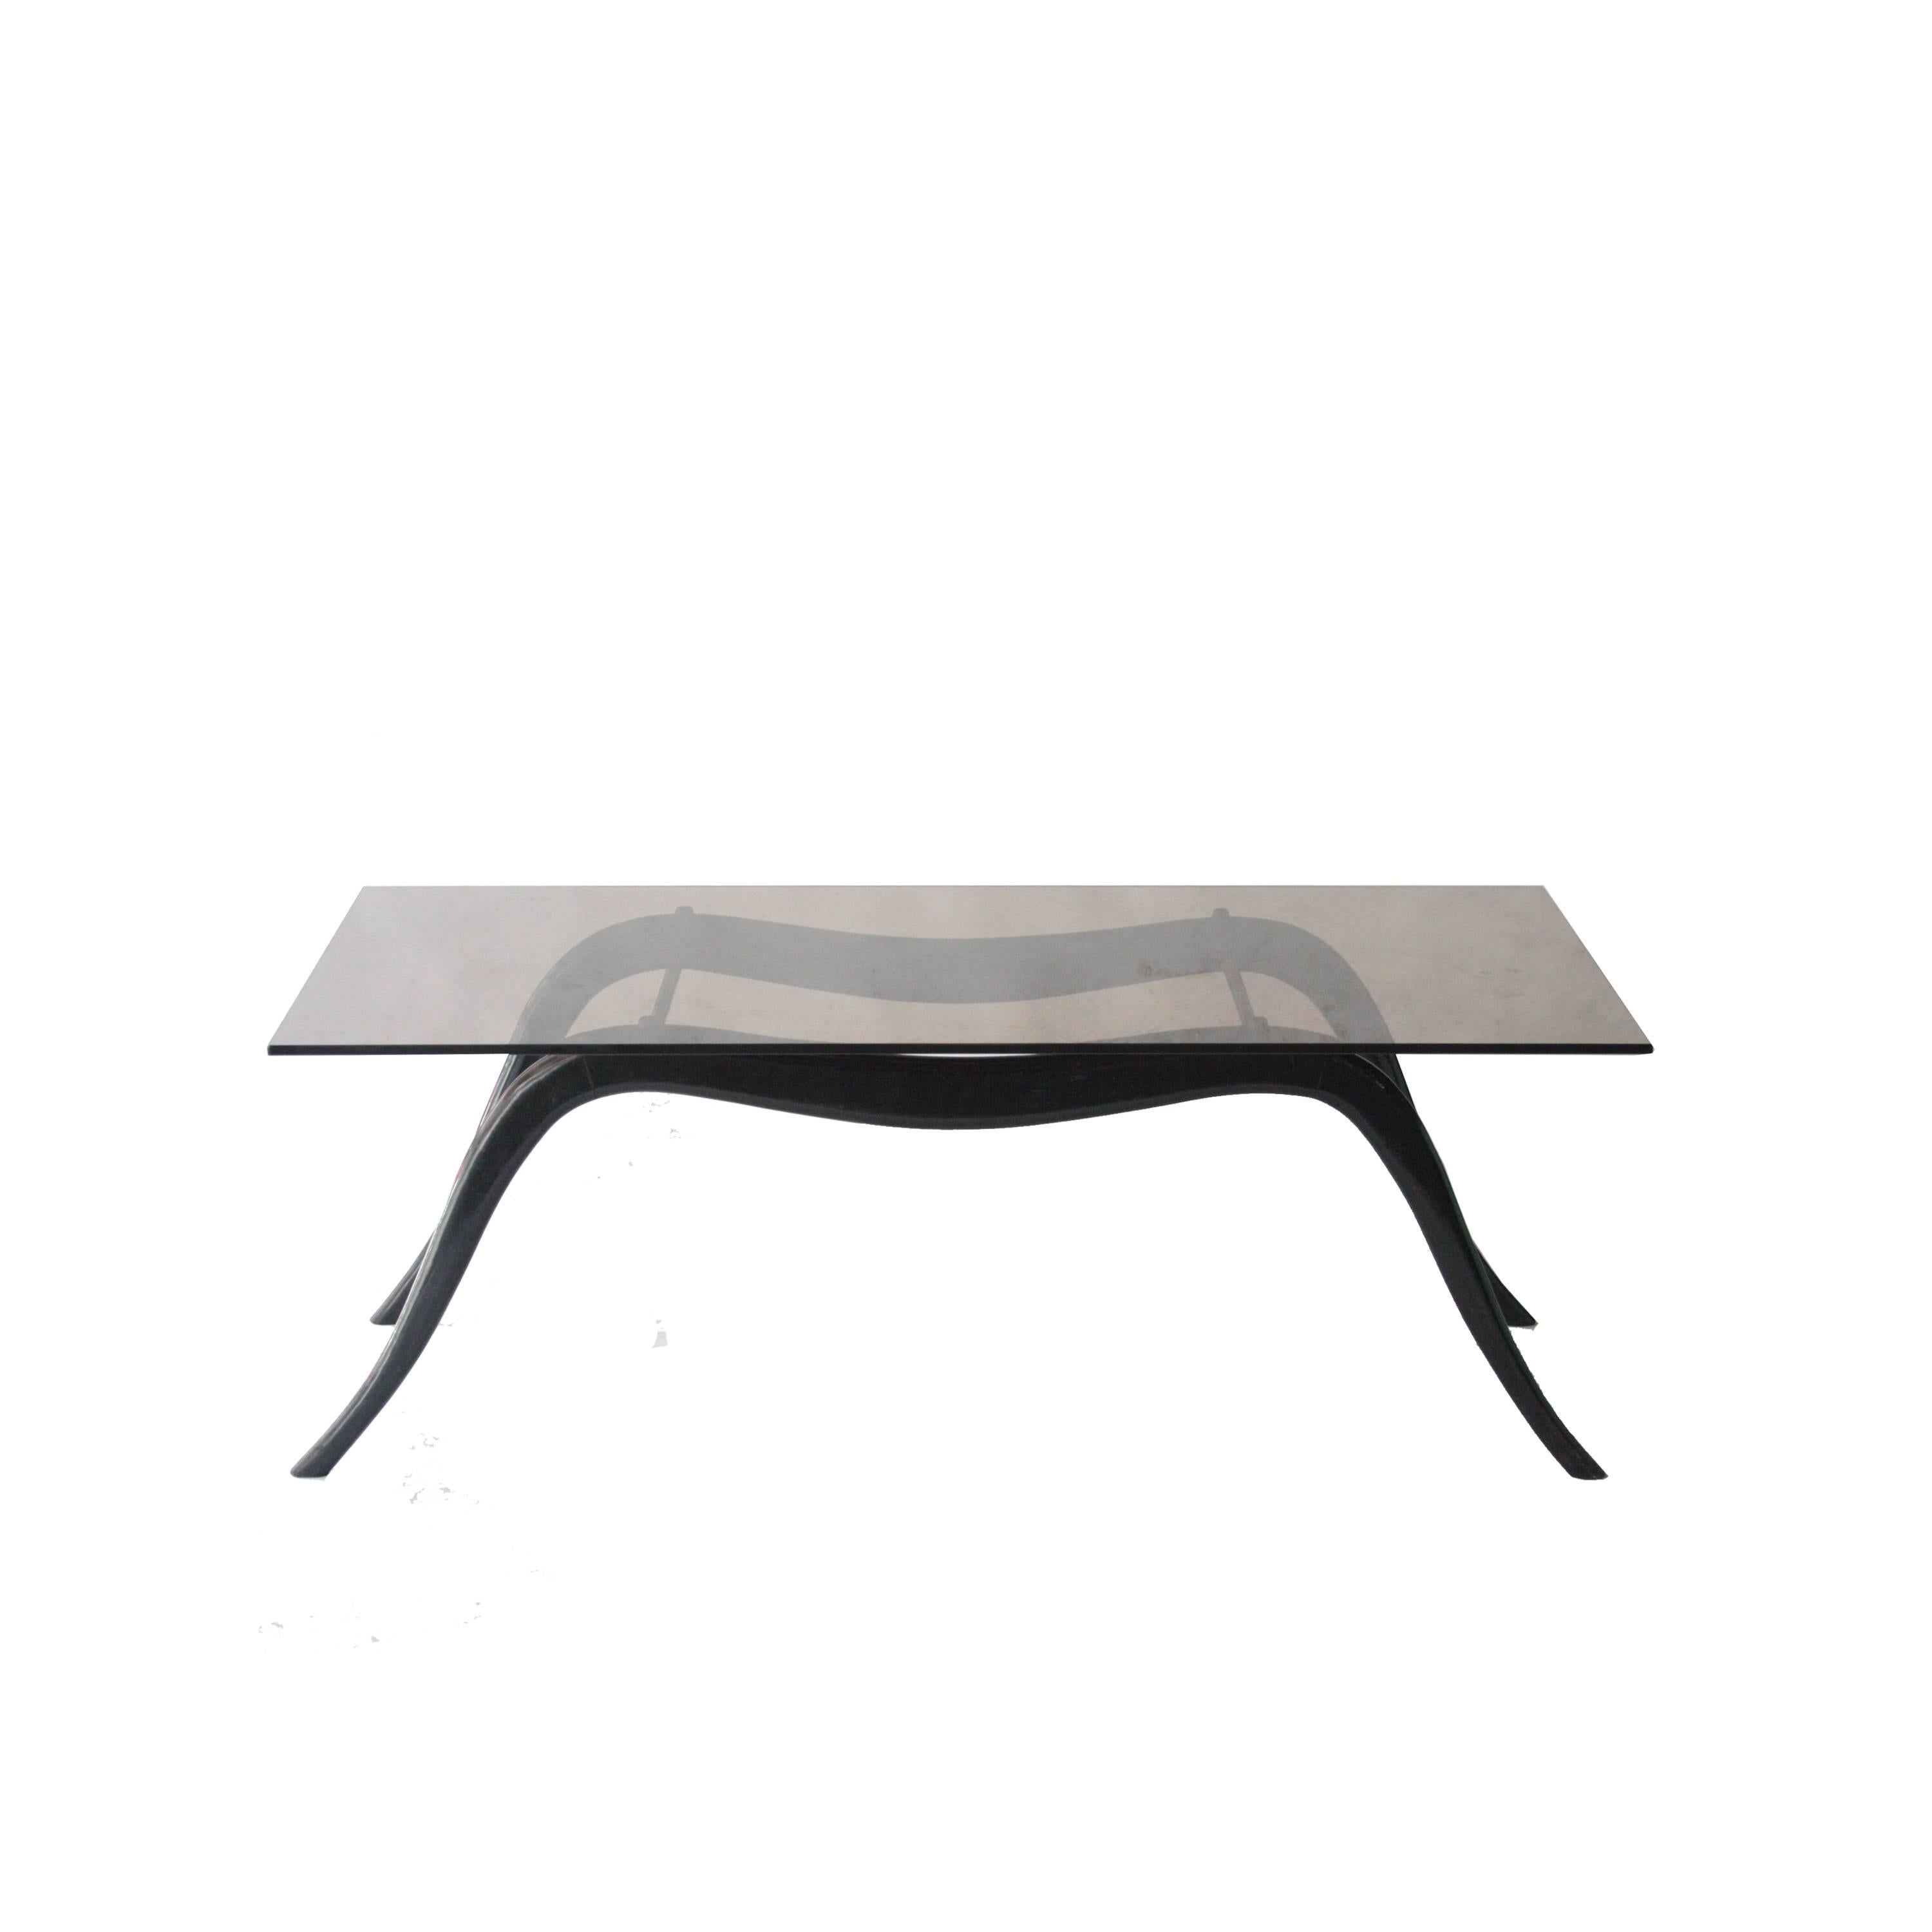 Table de centre attribuée à Ico Parisi avec structure en bois massif laqué noir, laiton et plateau en verre fumé noir.